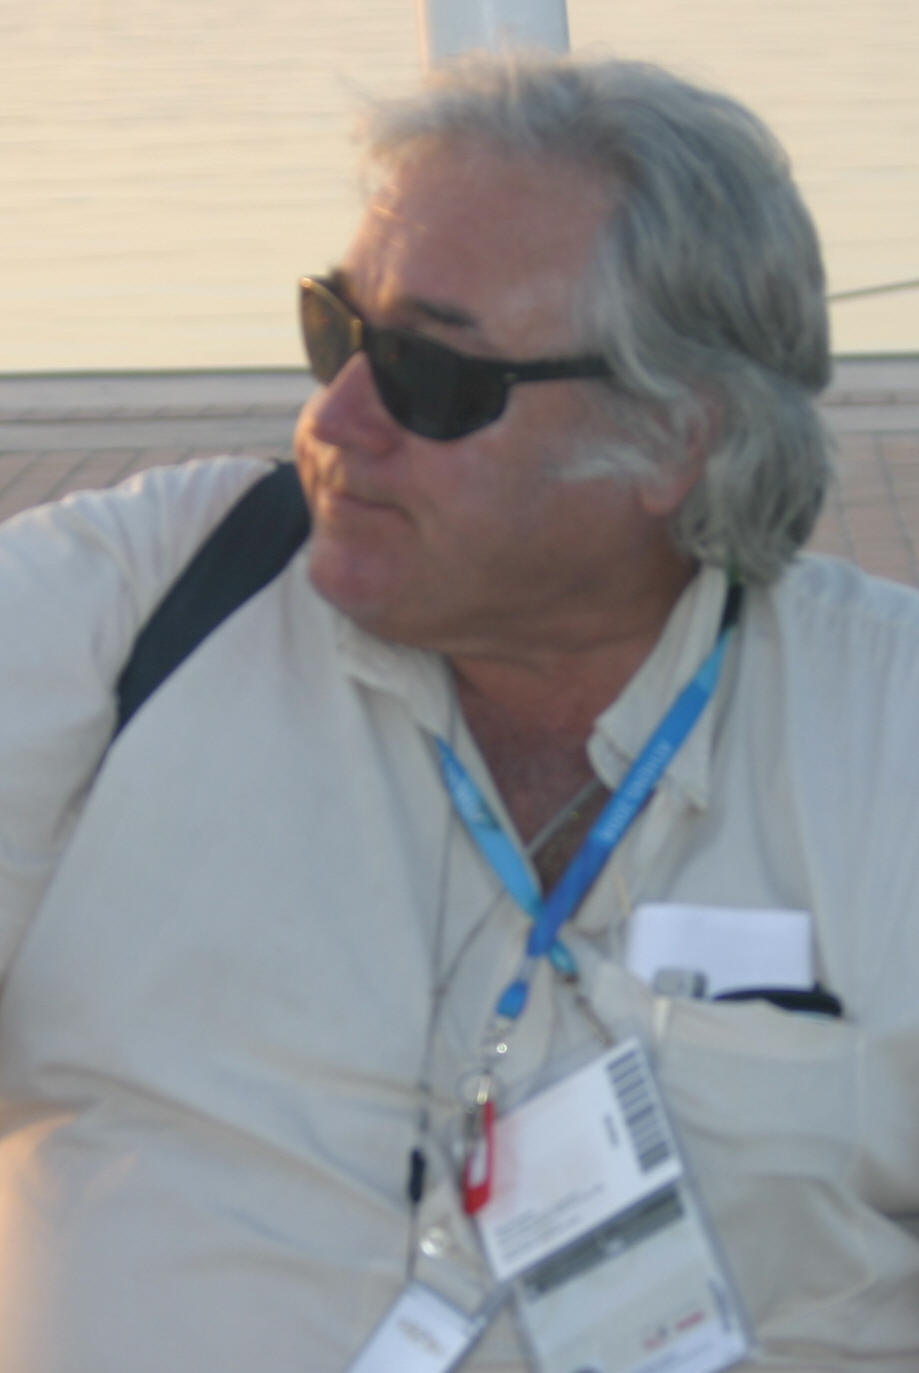 Paolo Venanzangeli Atene 2004